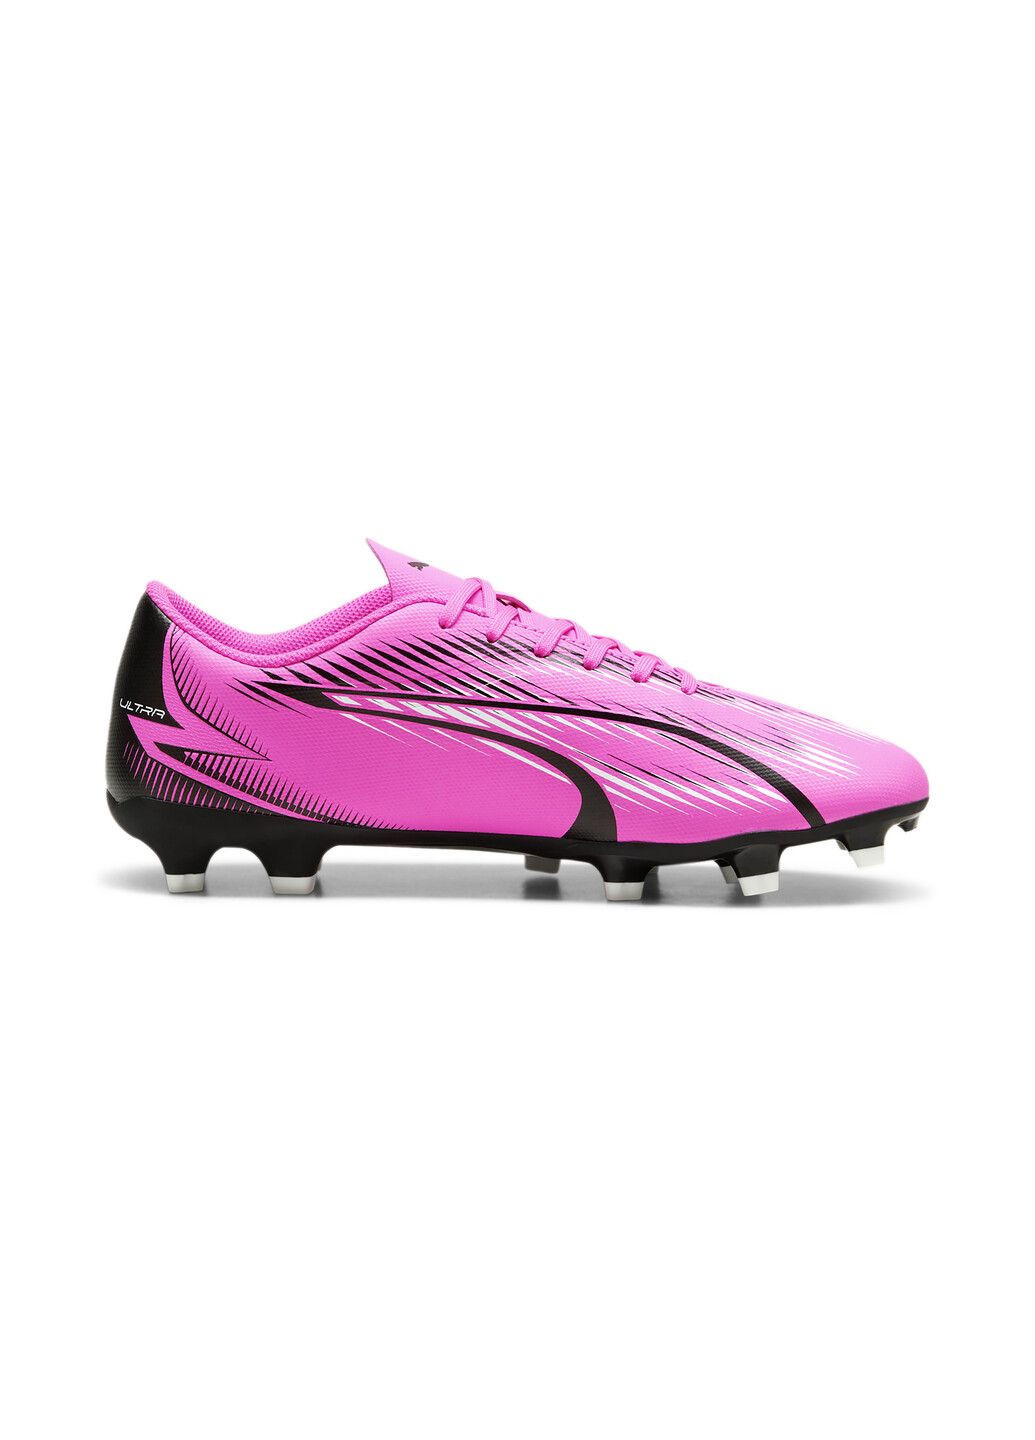 Розовые бутсы ultra play fg/ag football boots Puma